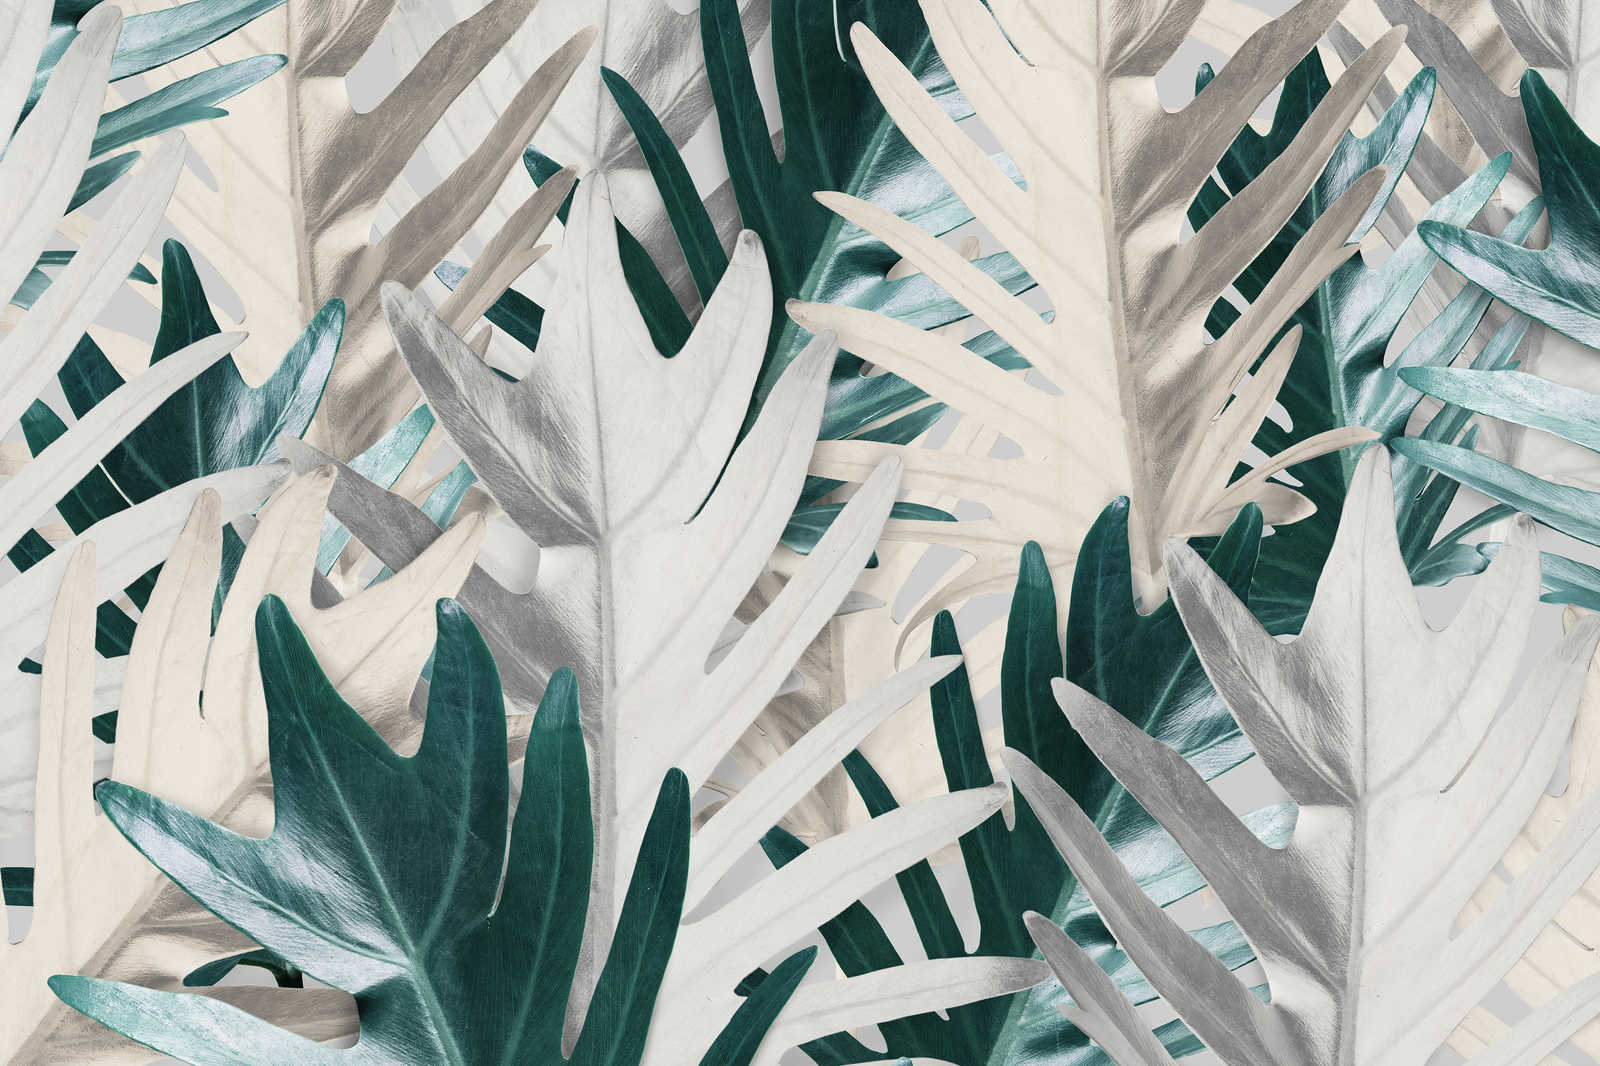             Leinwandbild mit tropischen Palmblättern – 0,90 m x 0,60 m
        